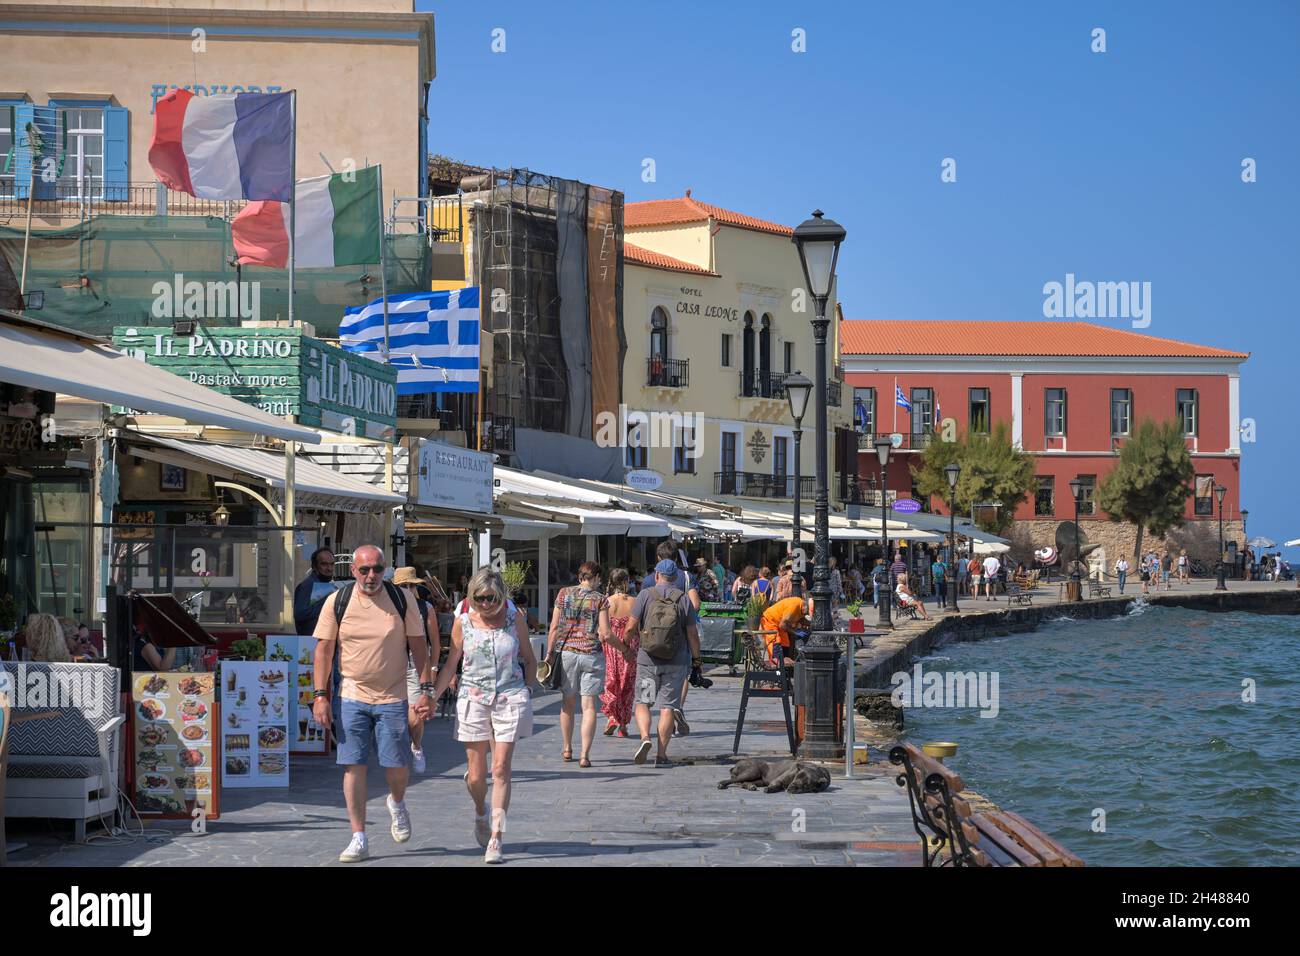 Venezianischer Hafen, Chania, Kreta, Griechenland Stock Photo